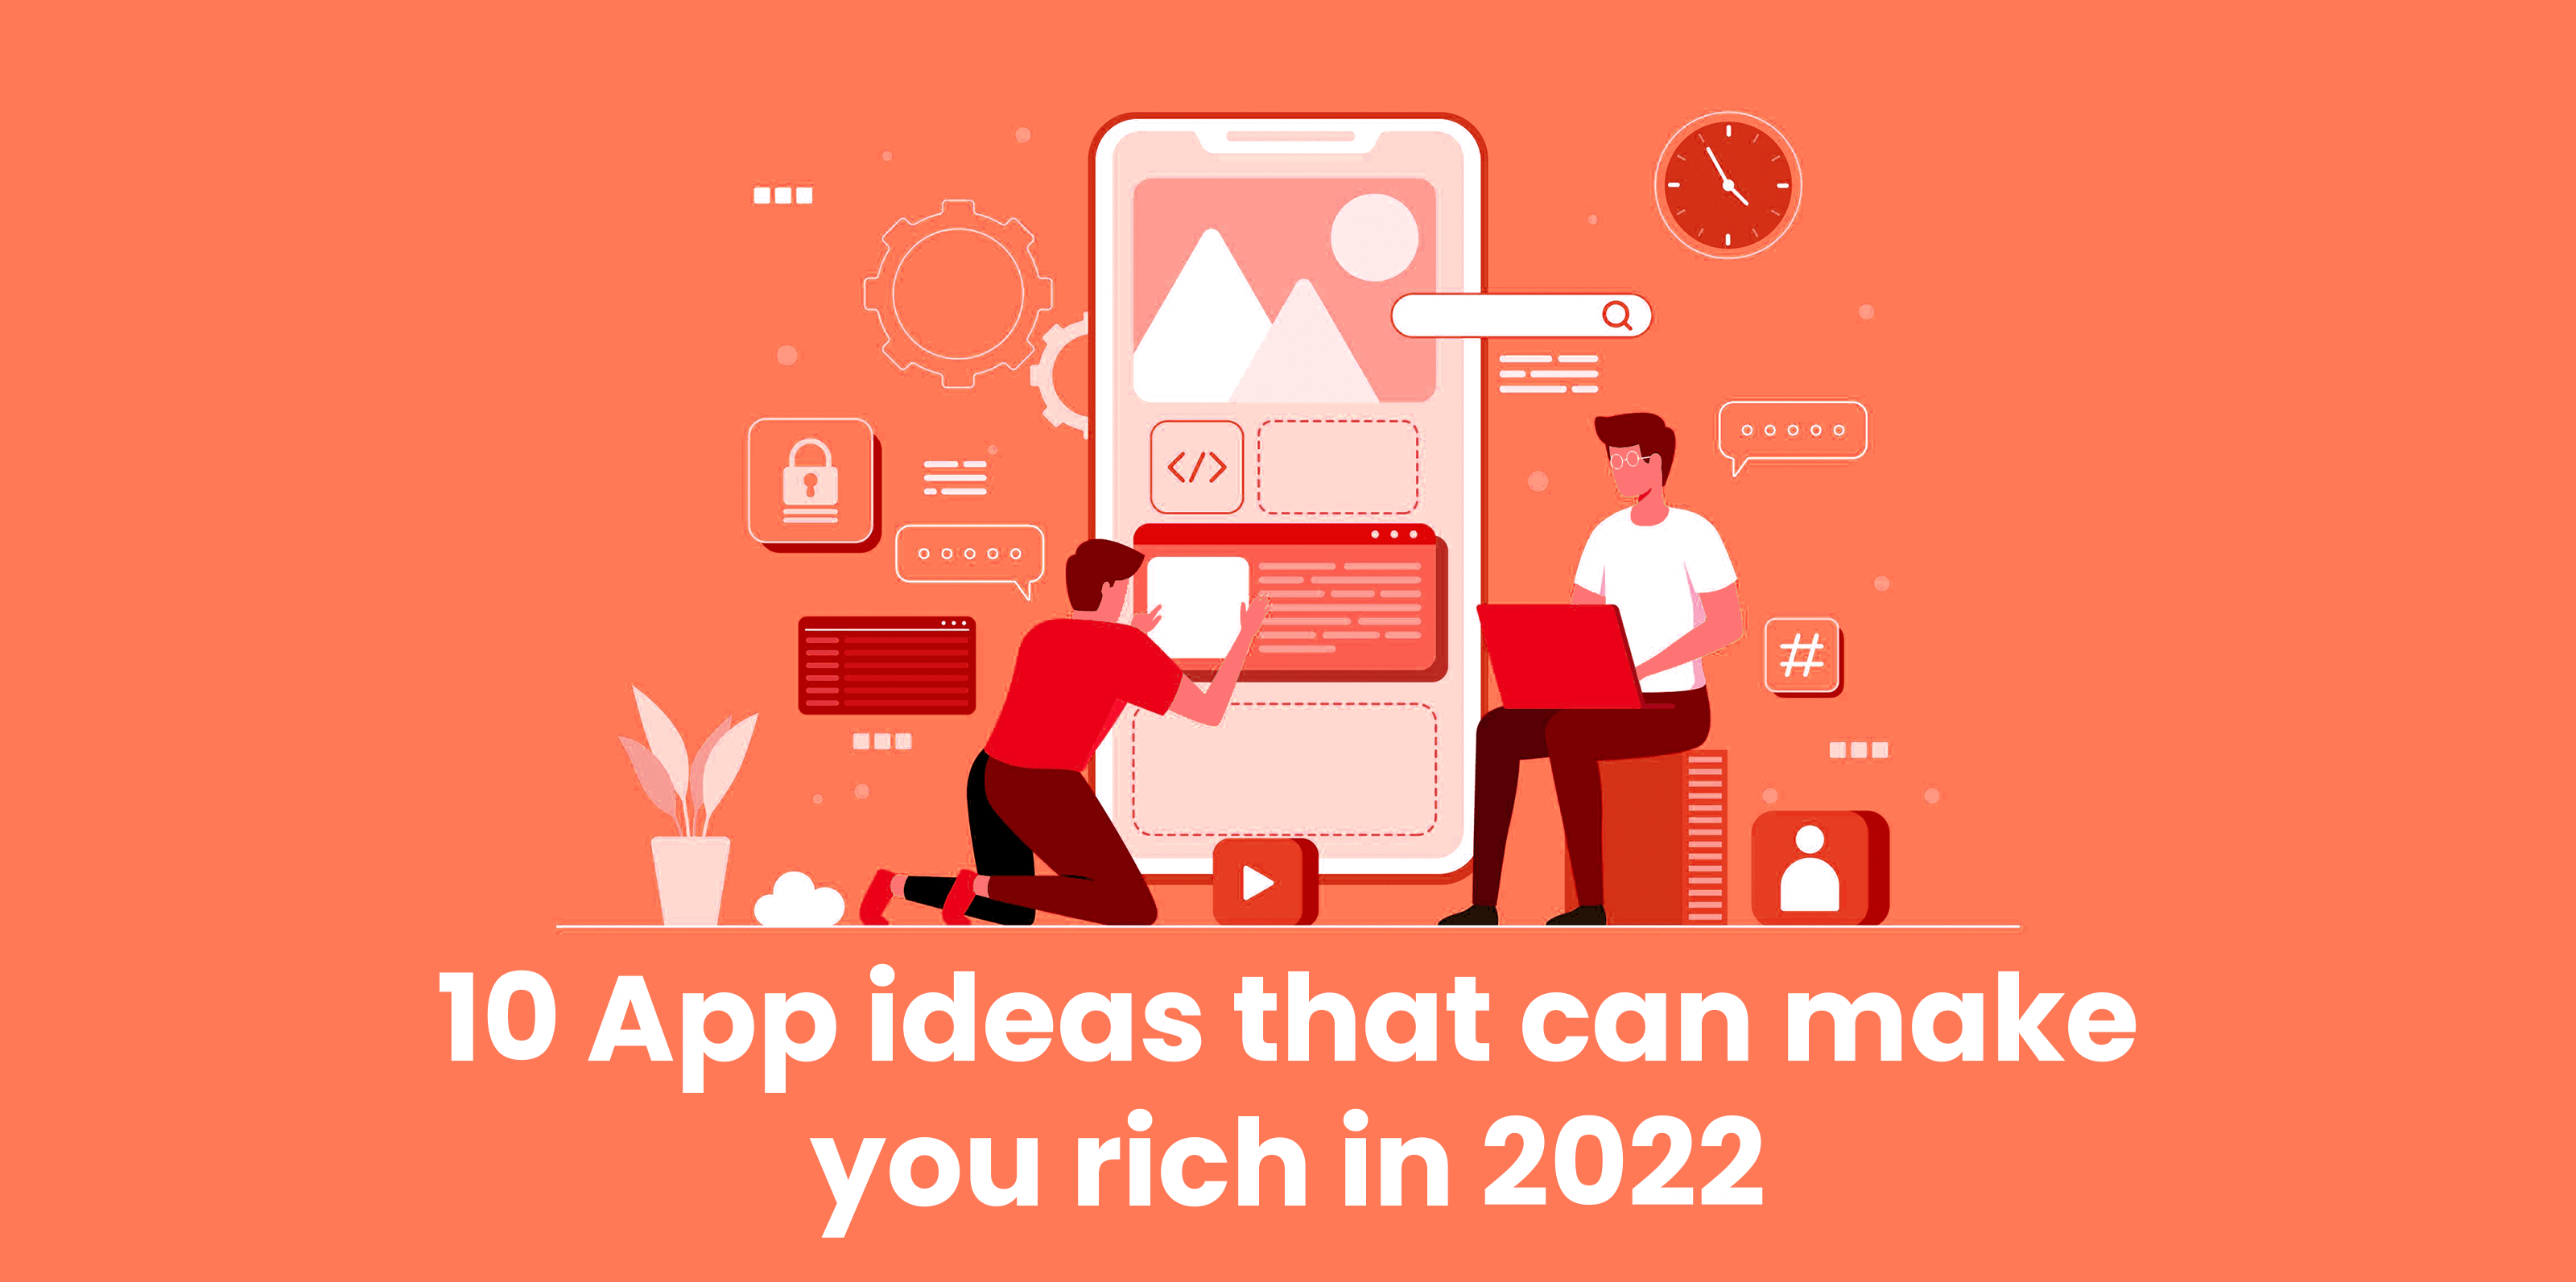 10-אפליקציות-רעיונות-שיכולים-לעשות-אתה-עשיר-ב-2022